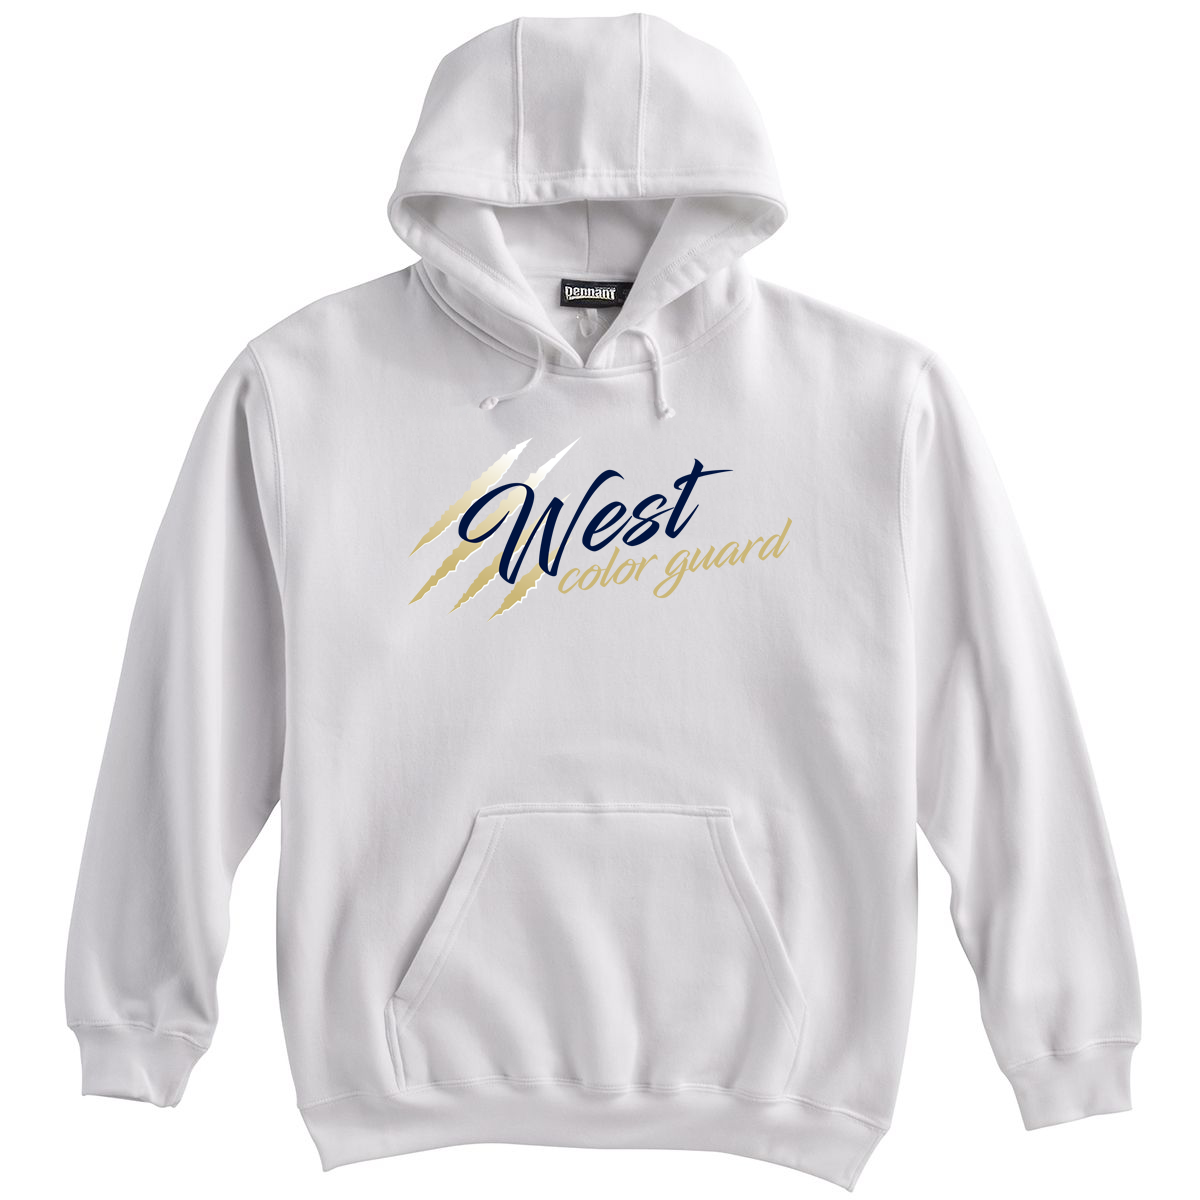 West Forsyth Color Guard Sweatshirt